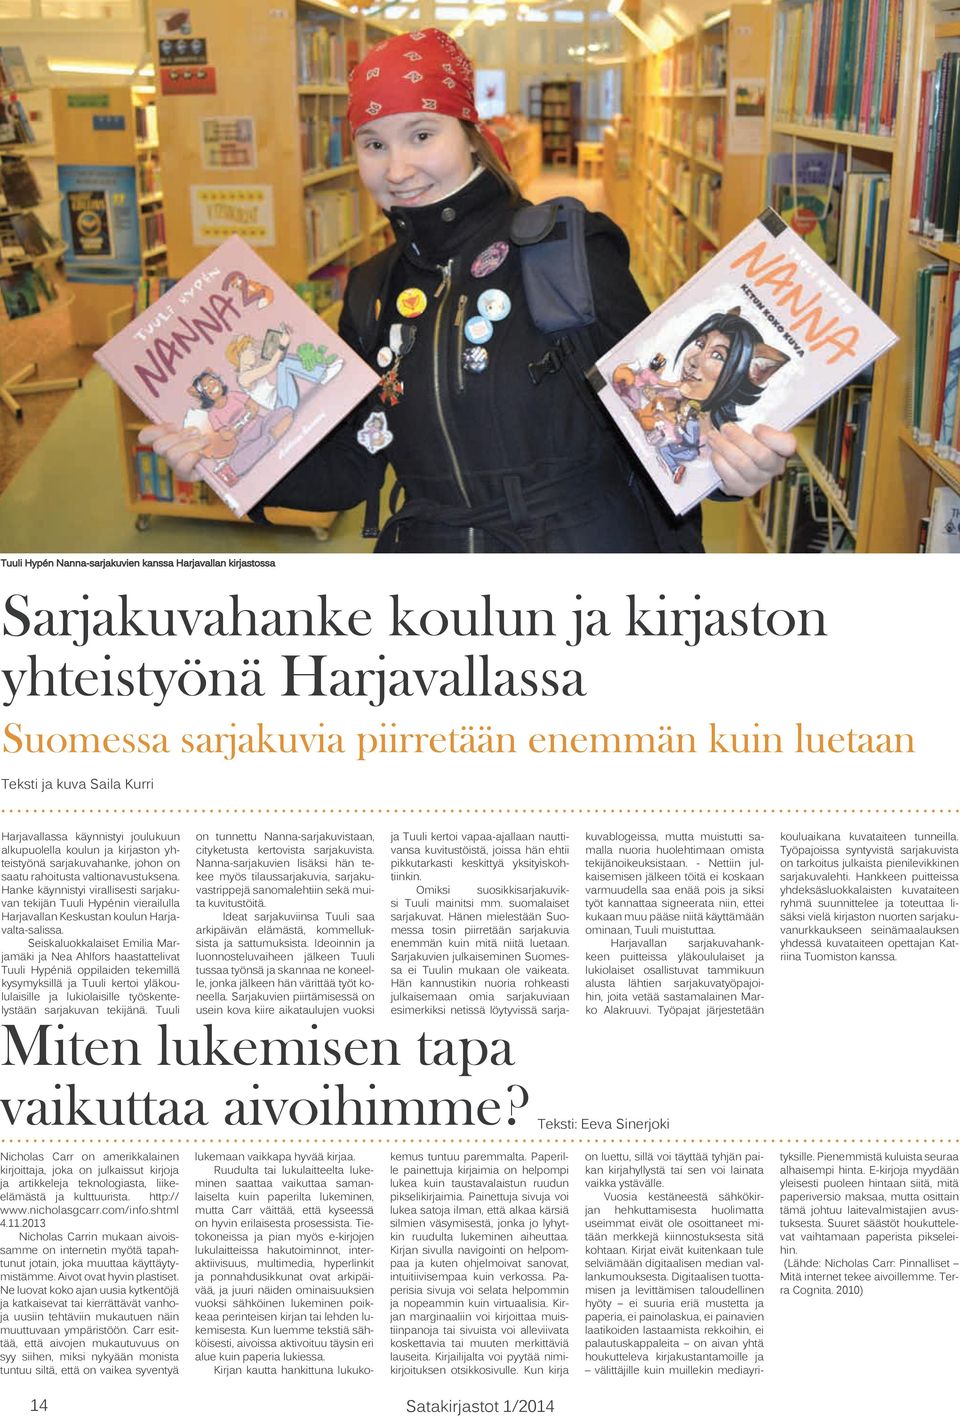 Hanke käynnistyi virallisesti sarjakuvan tekijän Tuuli Hypénin vierailulla Harjavallan Keskustan koulun Harjavalta-salissa.